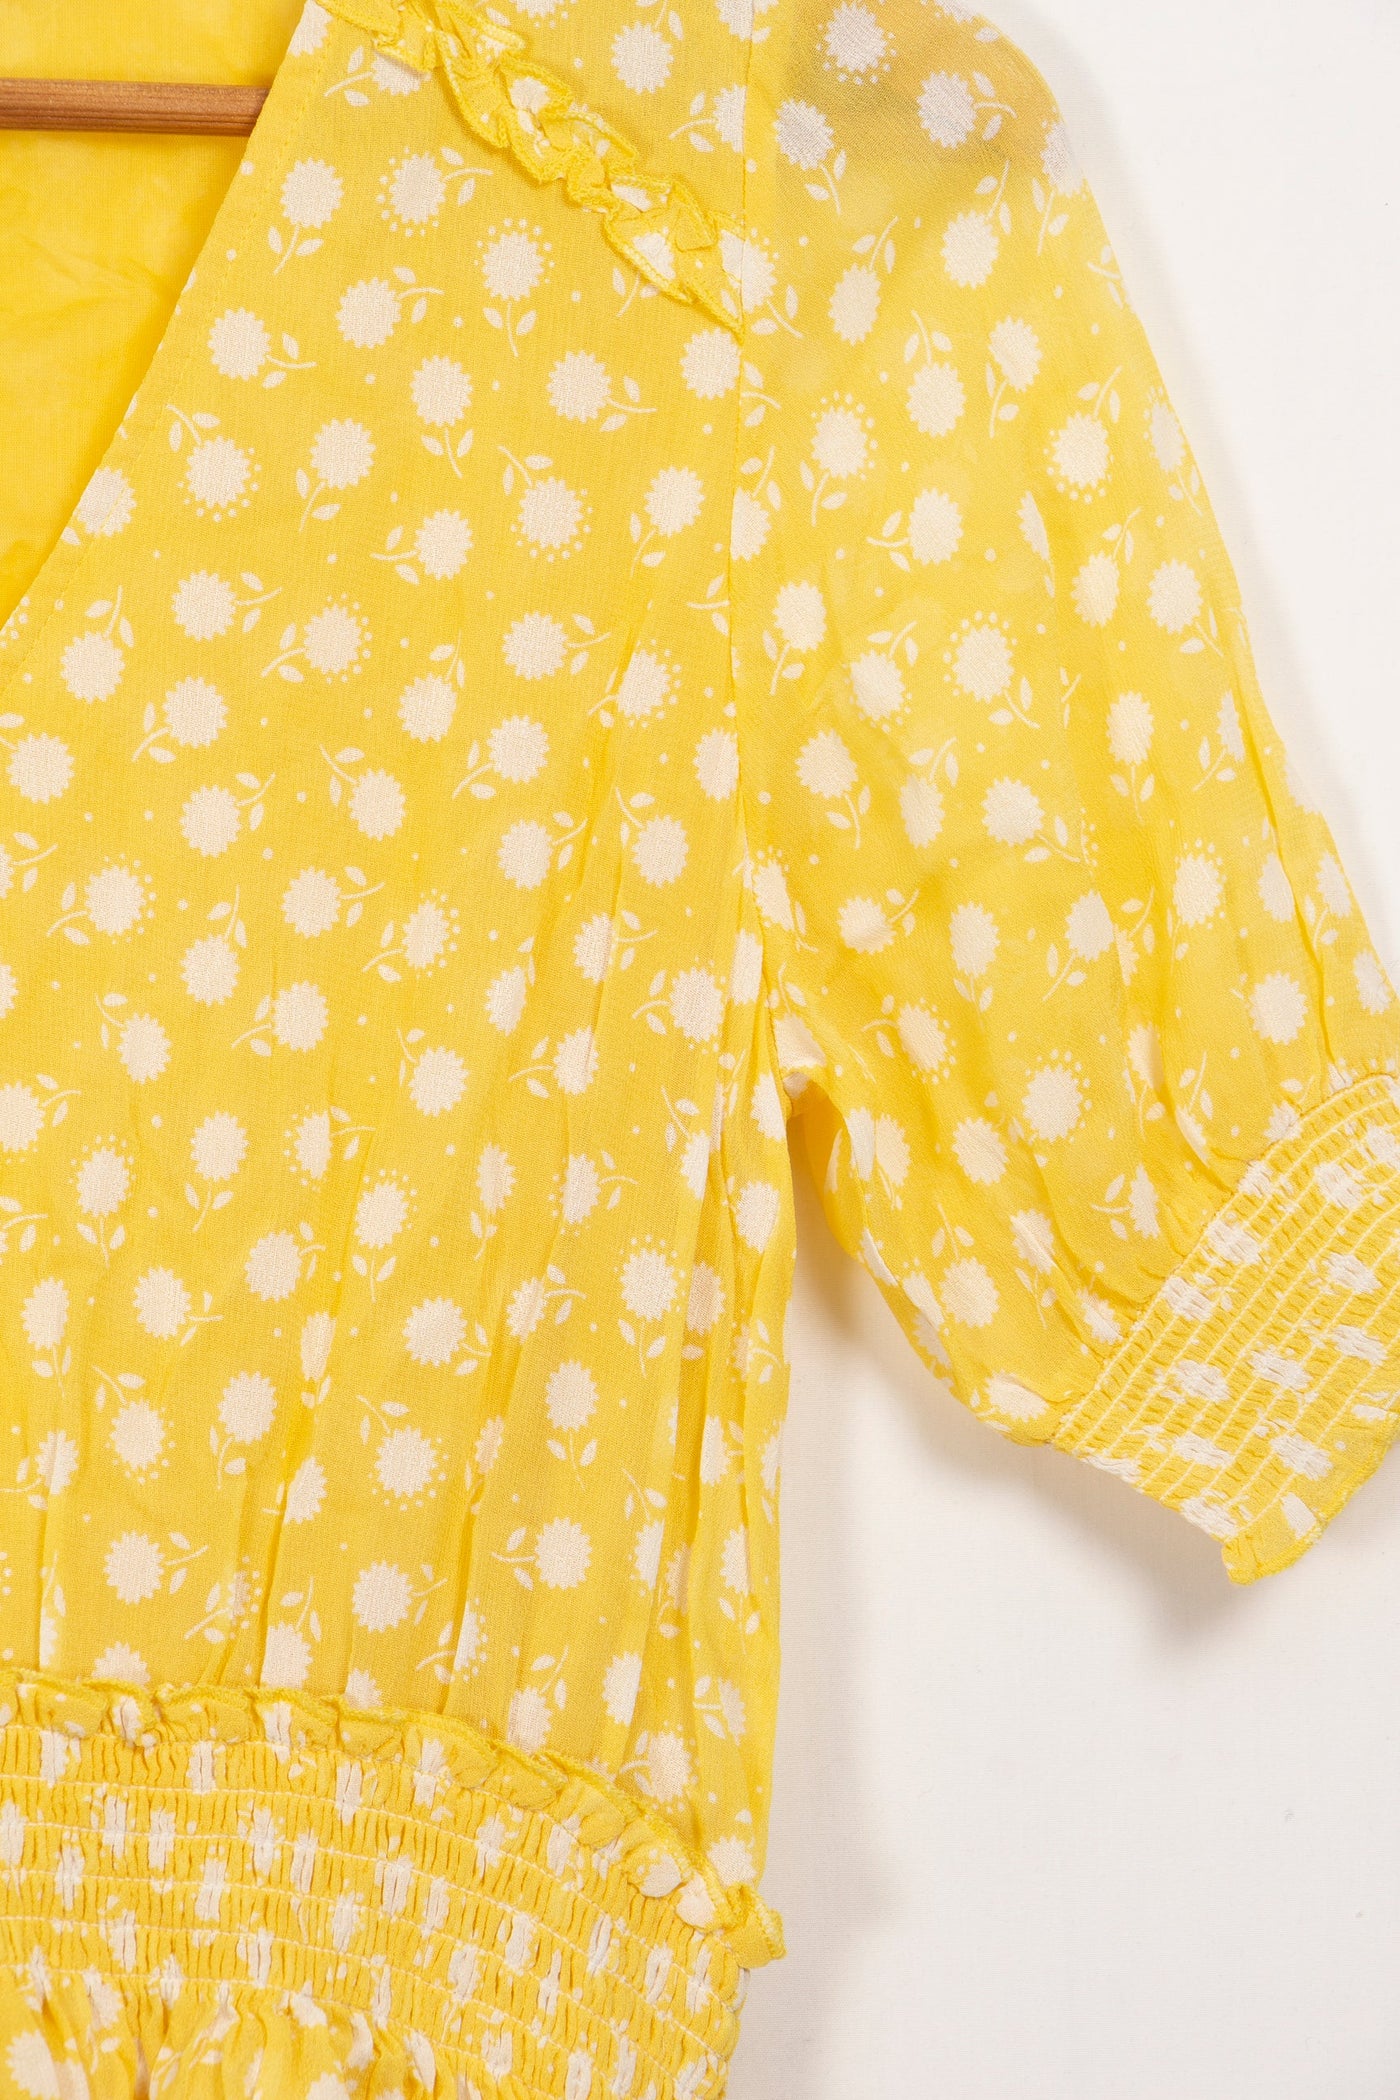 Robe jaune avec des motifs de fleurs Petite Mendigote - S